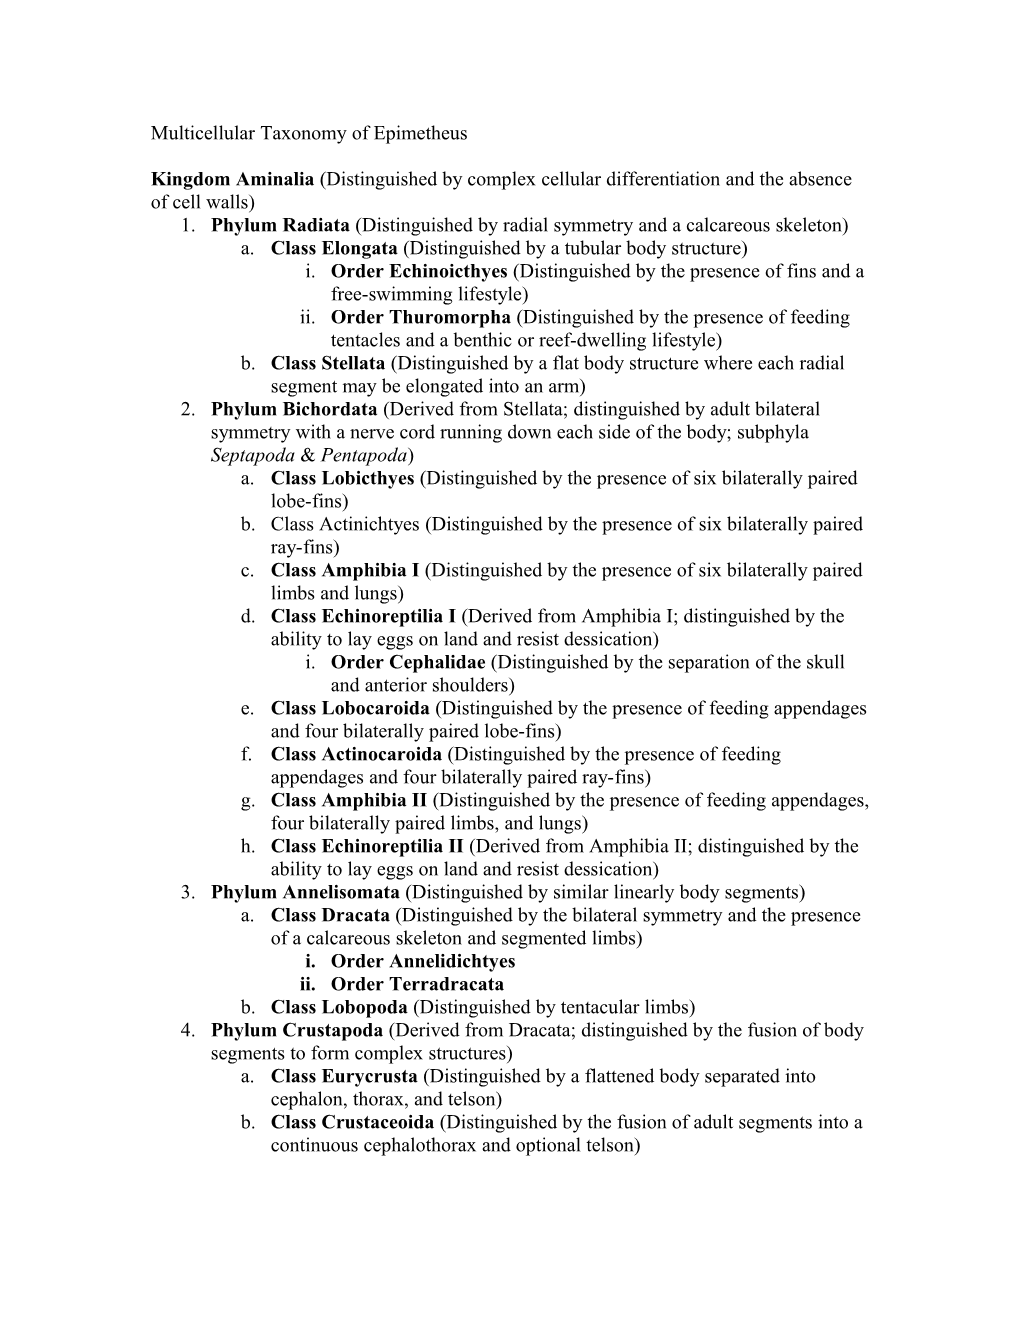 Taxonomy of Epimetheus